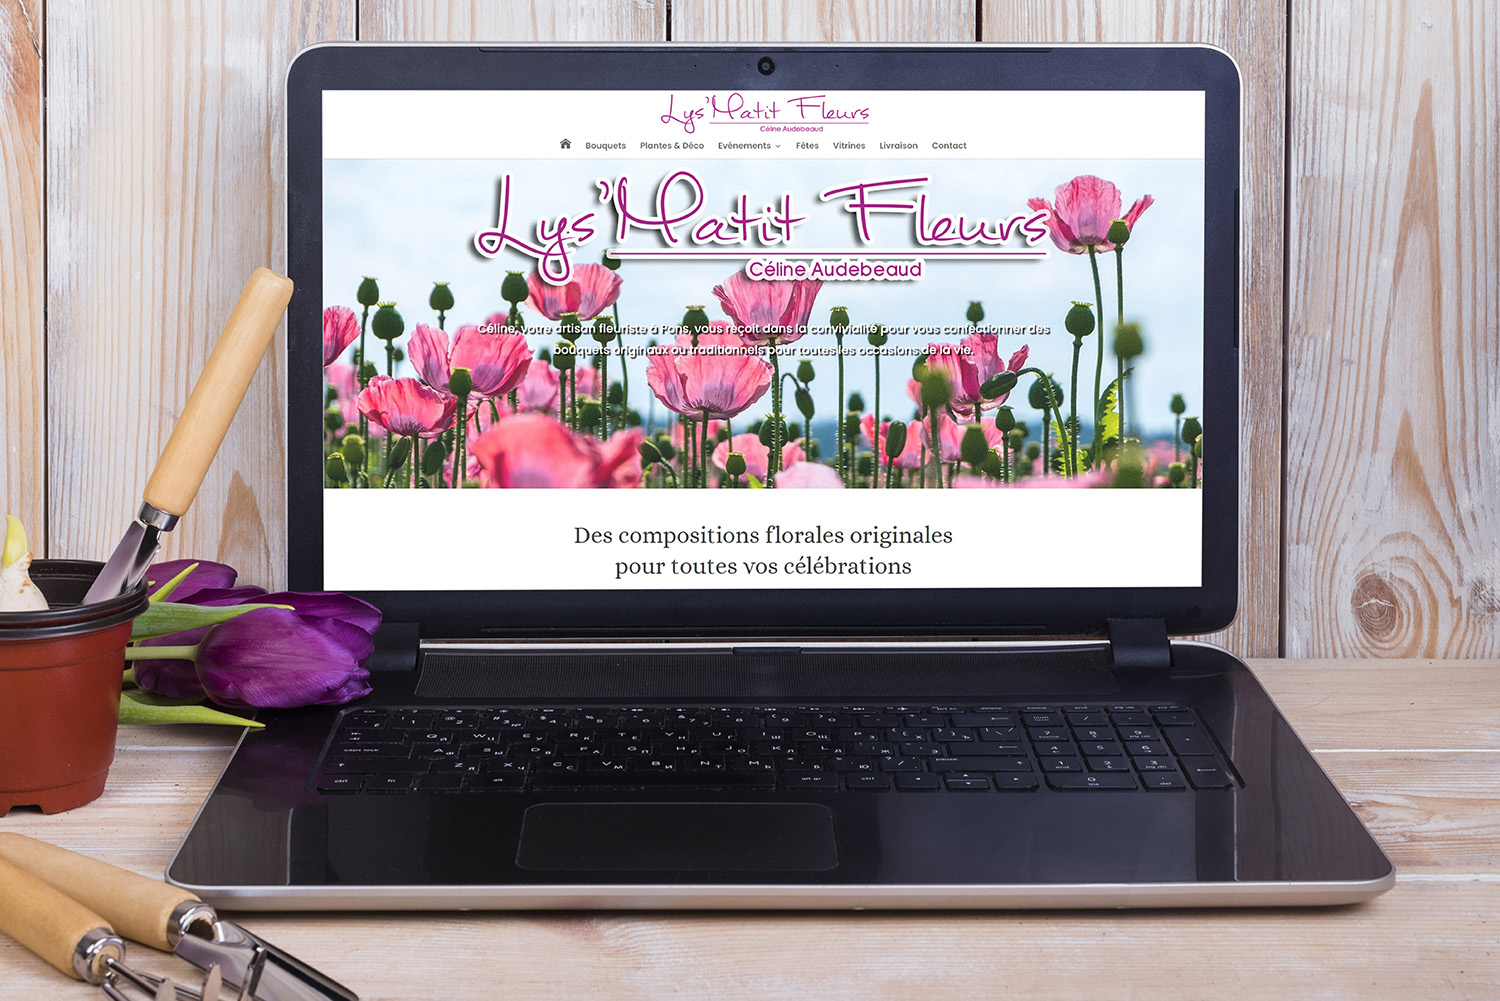 Lys matit Fleurs à Pons - Création de site internet - E-magencia